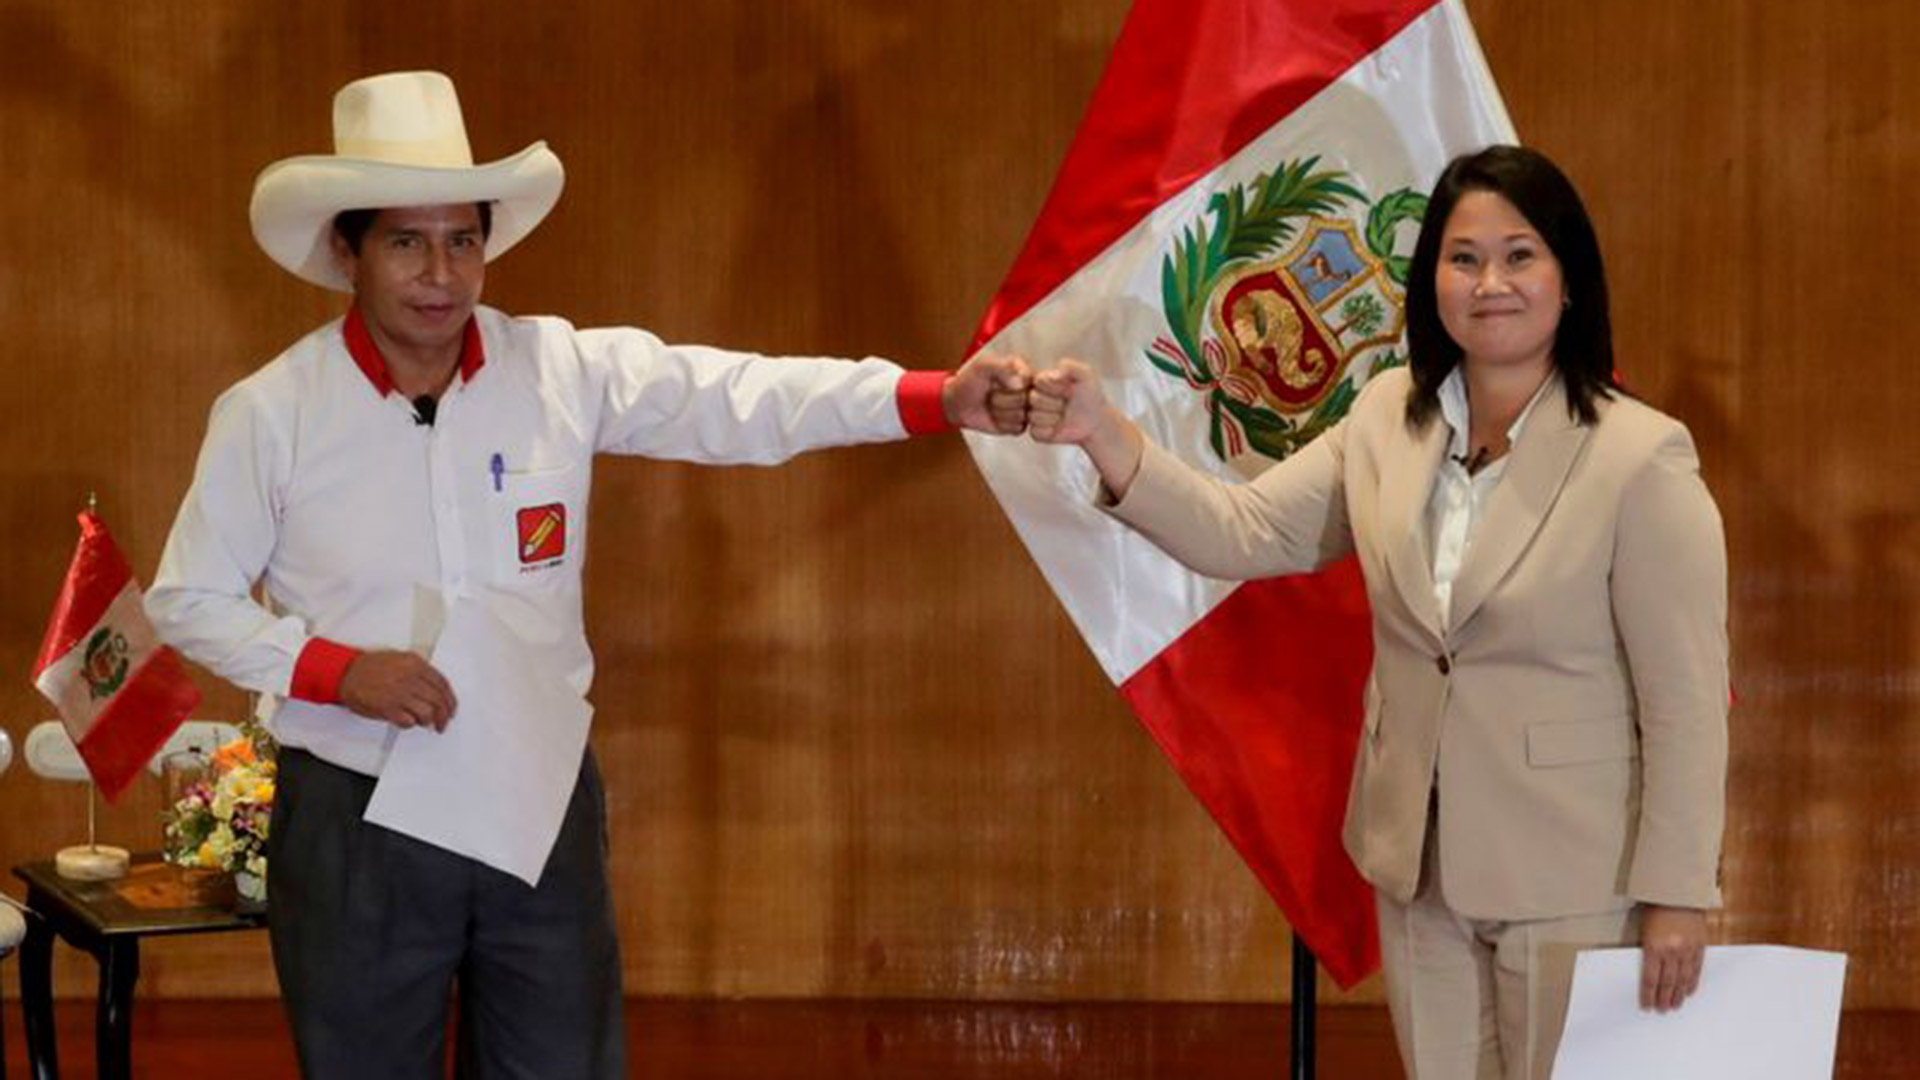 Los candidatos presidenciales peruanos Pedro Castillo y Keiko Fujimori (Foto: REUTERS/Sebastian Castaneda)